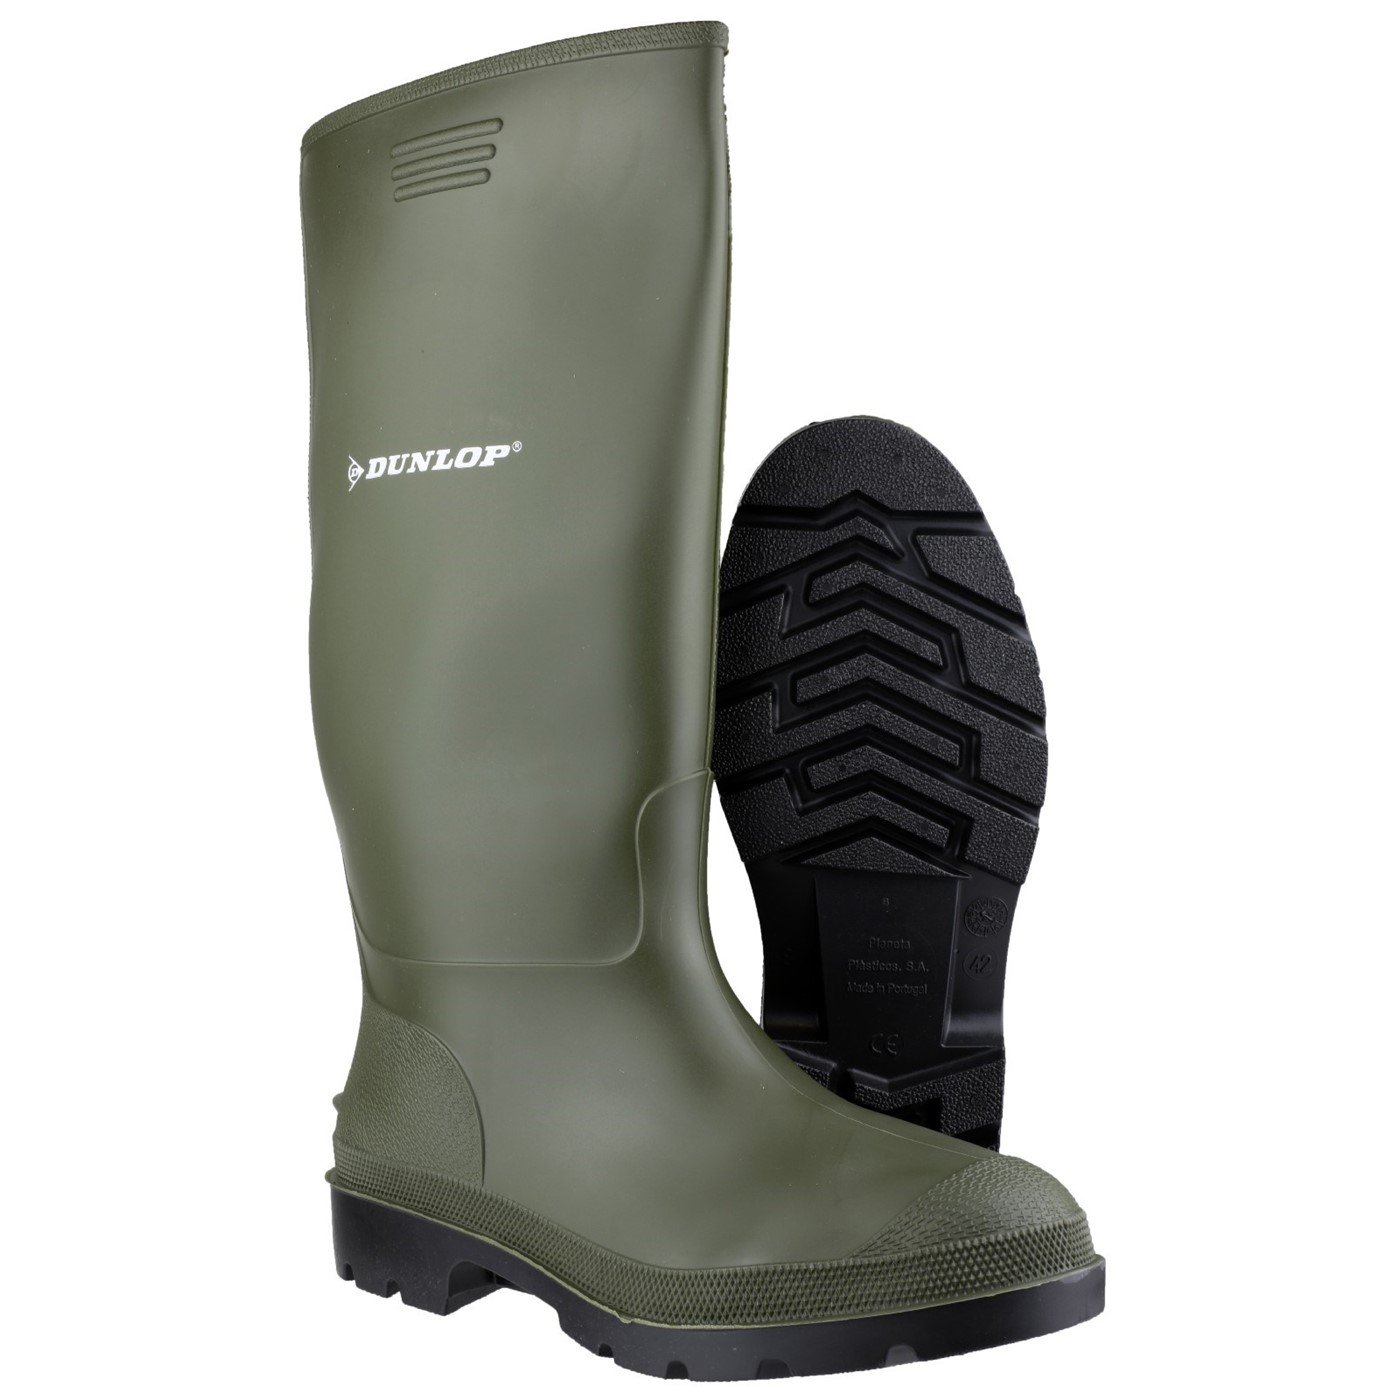 Dunlop Pricemaster Boot, Green, Size 8(42)